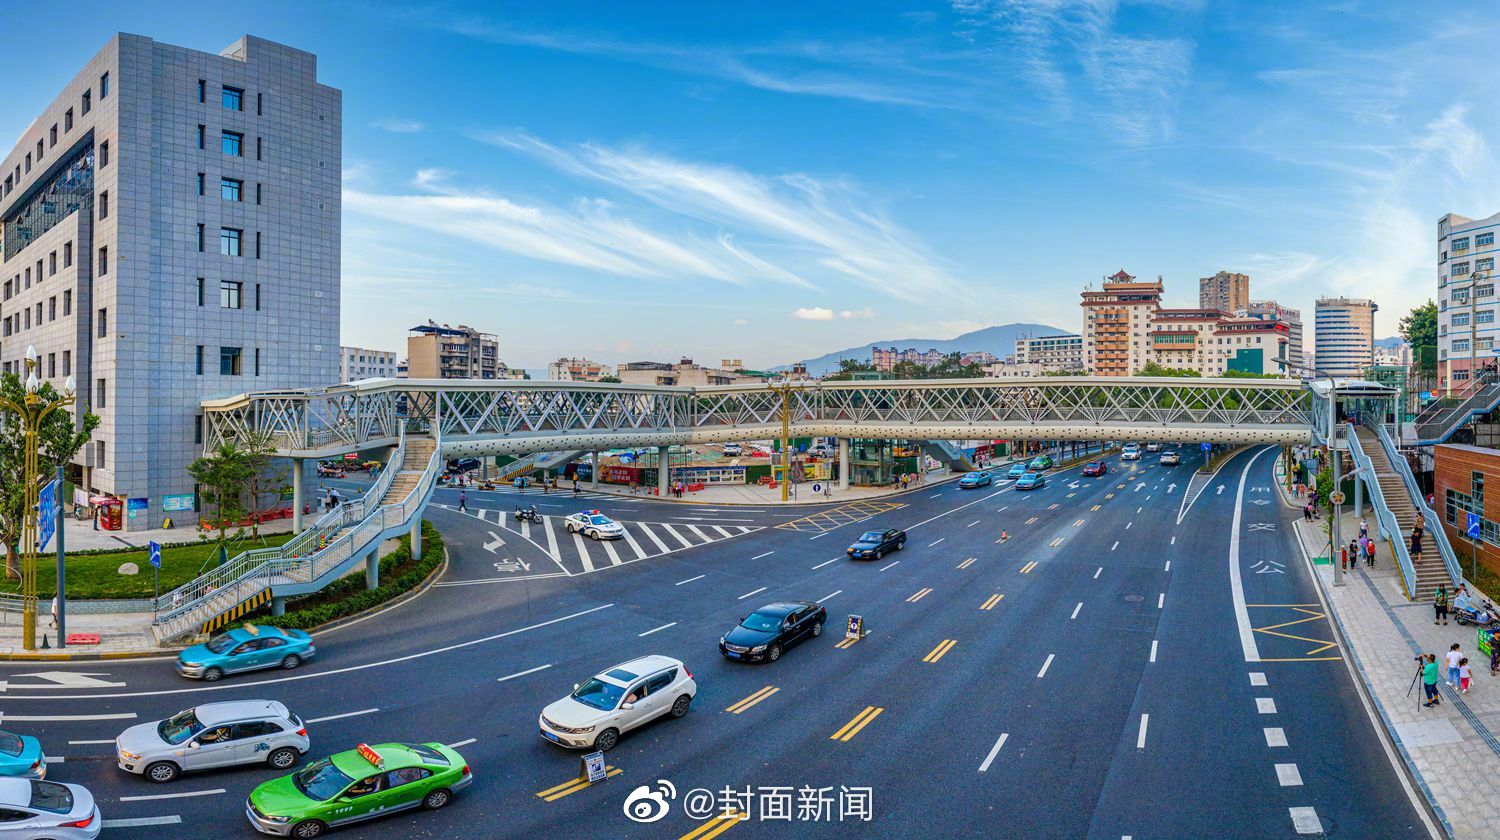 成都温江荣获“最具幸福感城市•美丽宜居城区”称号 | 每经网